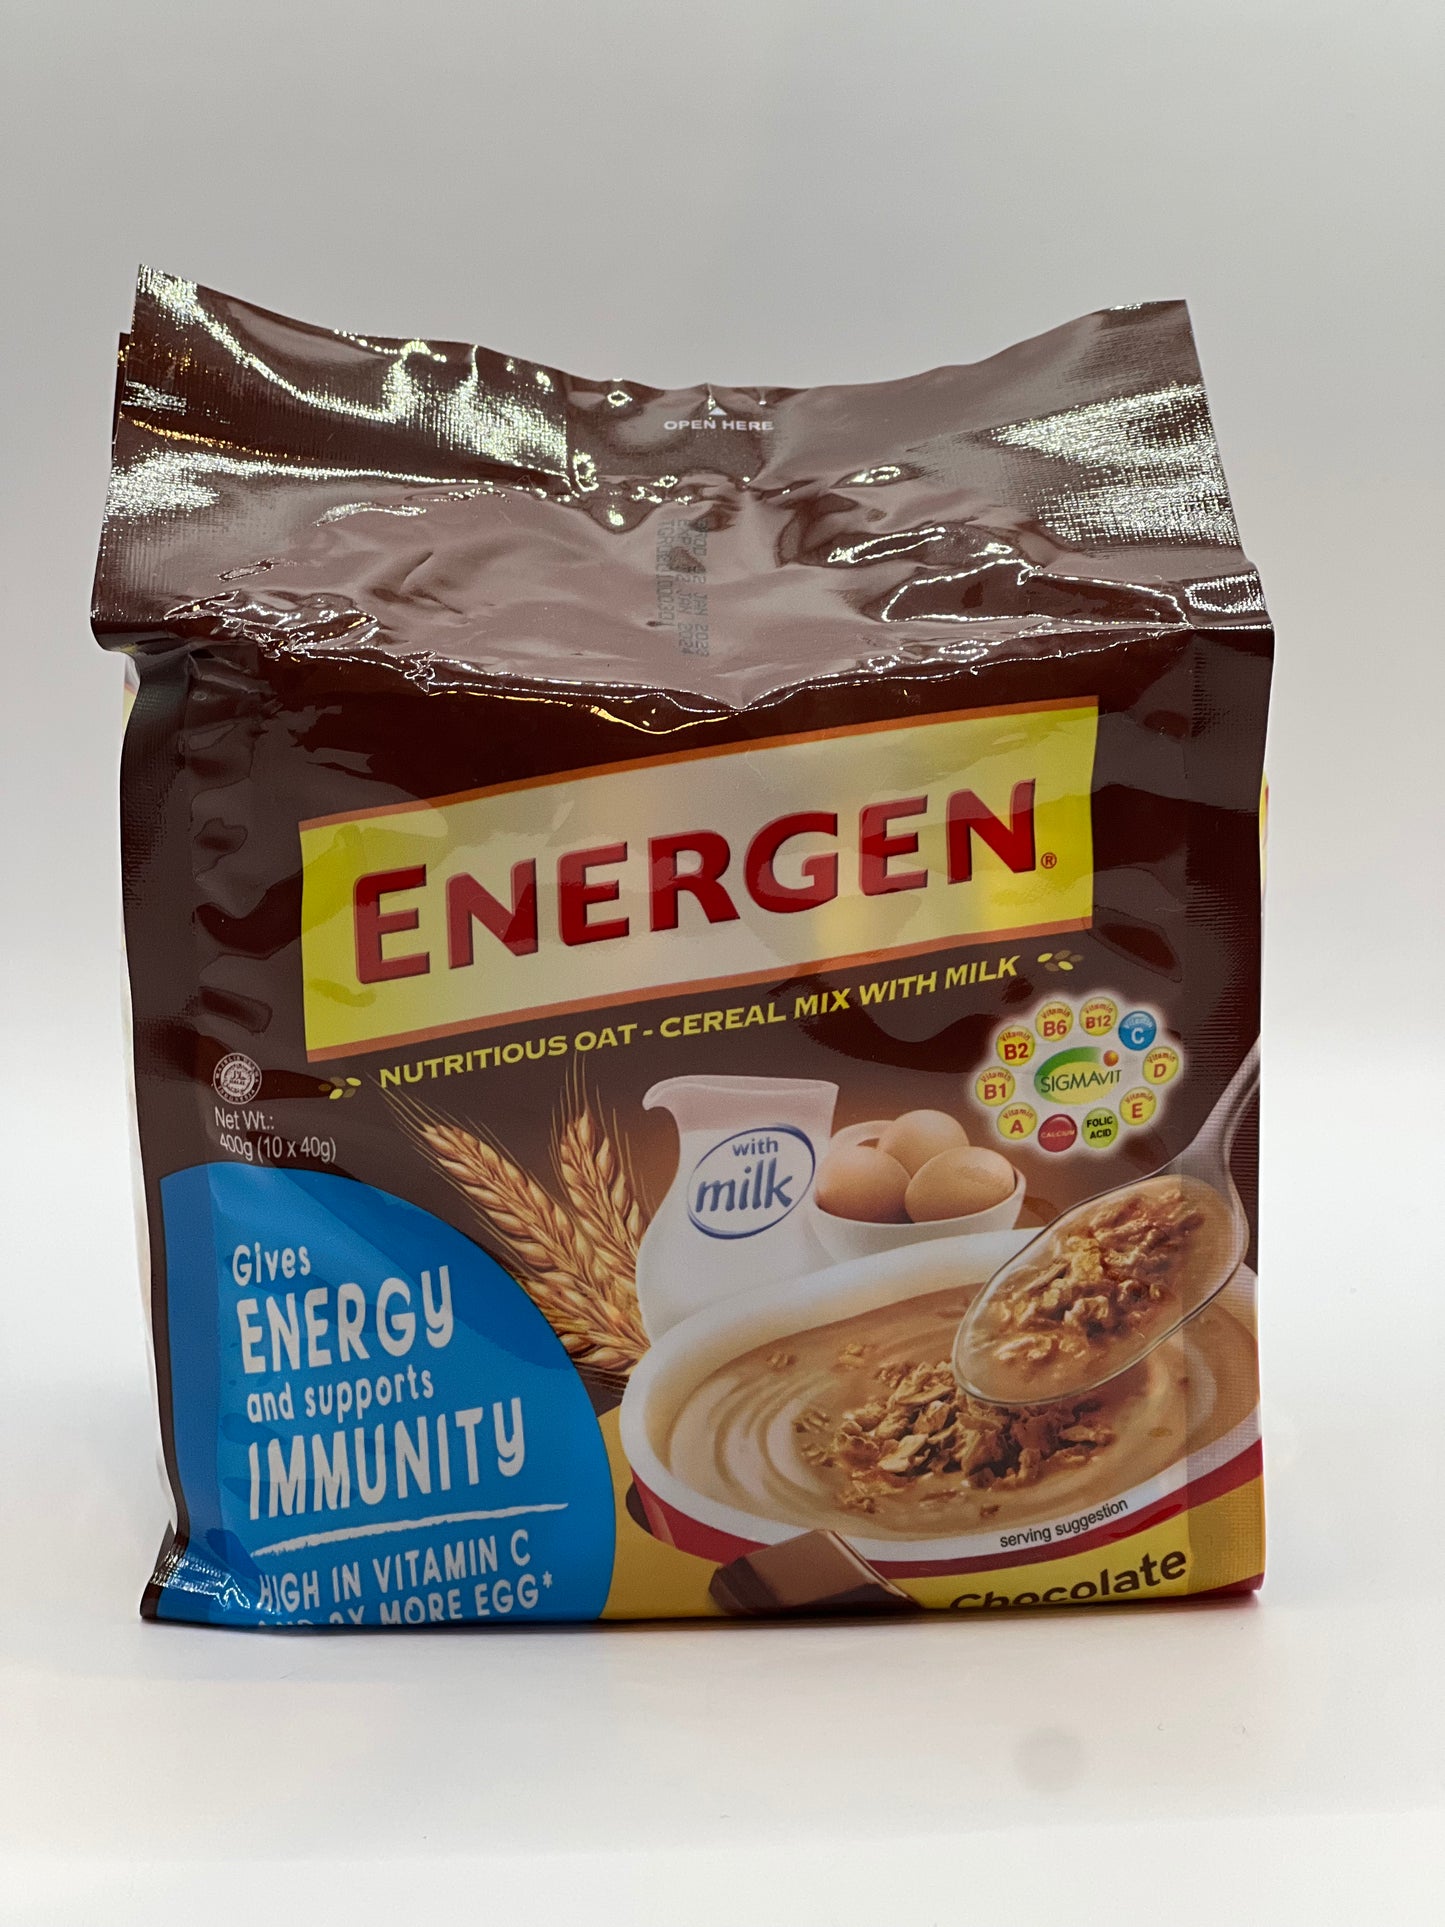 Energen Oat-Cereal 10 x 40 grams